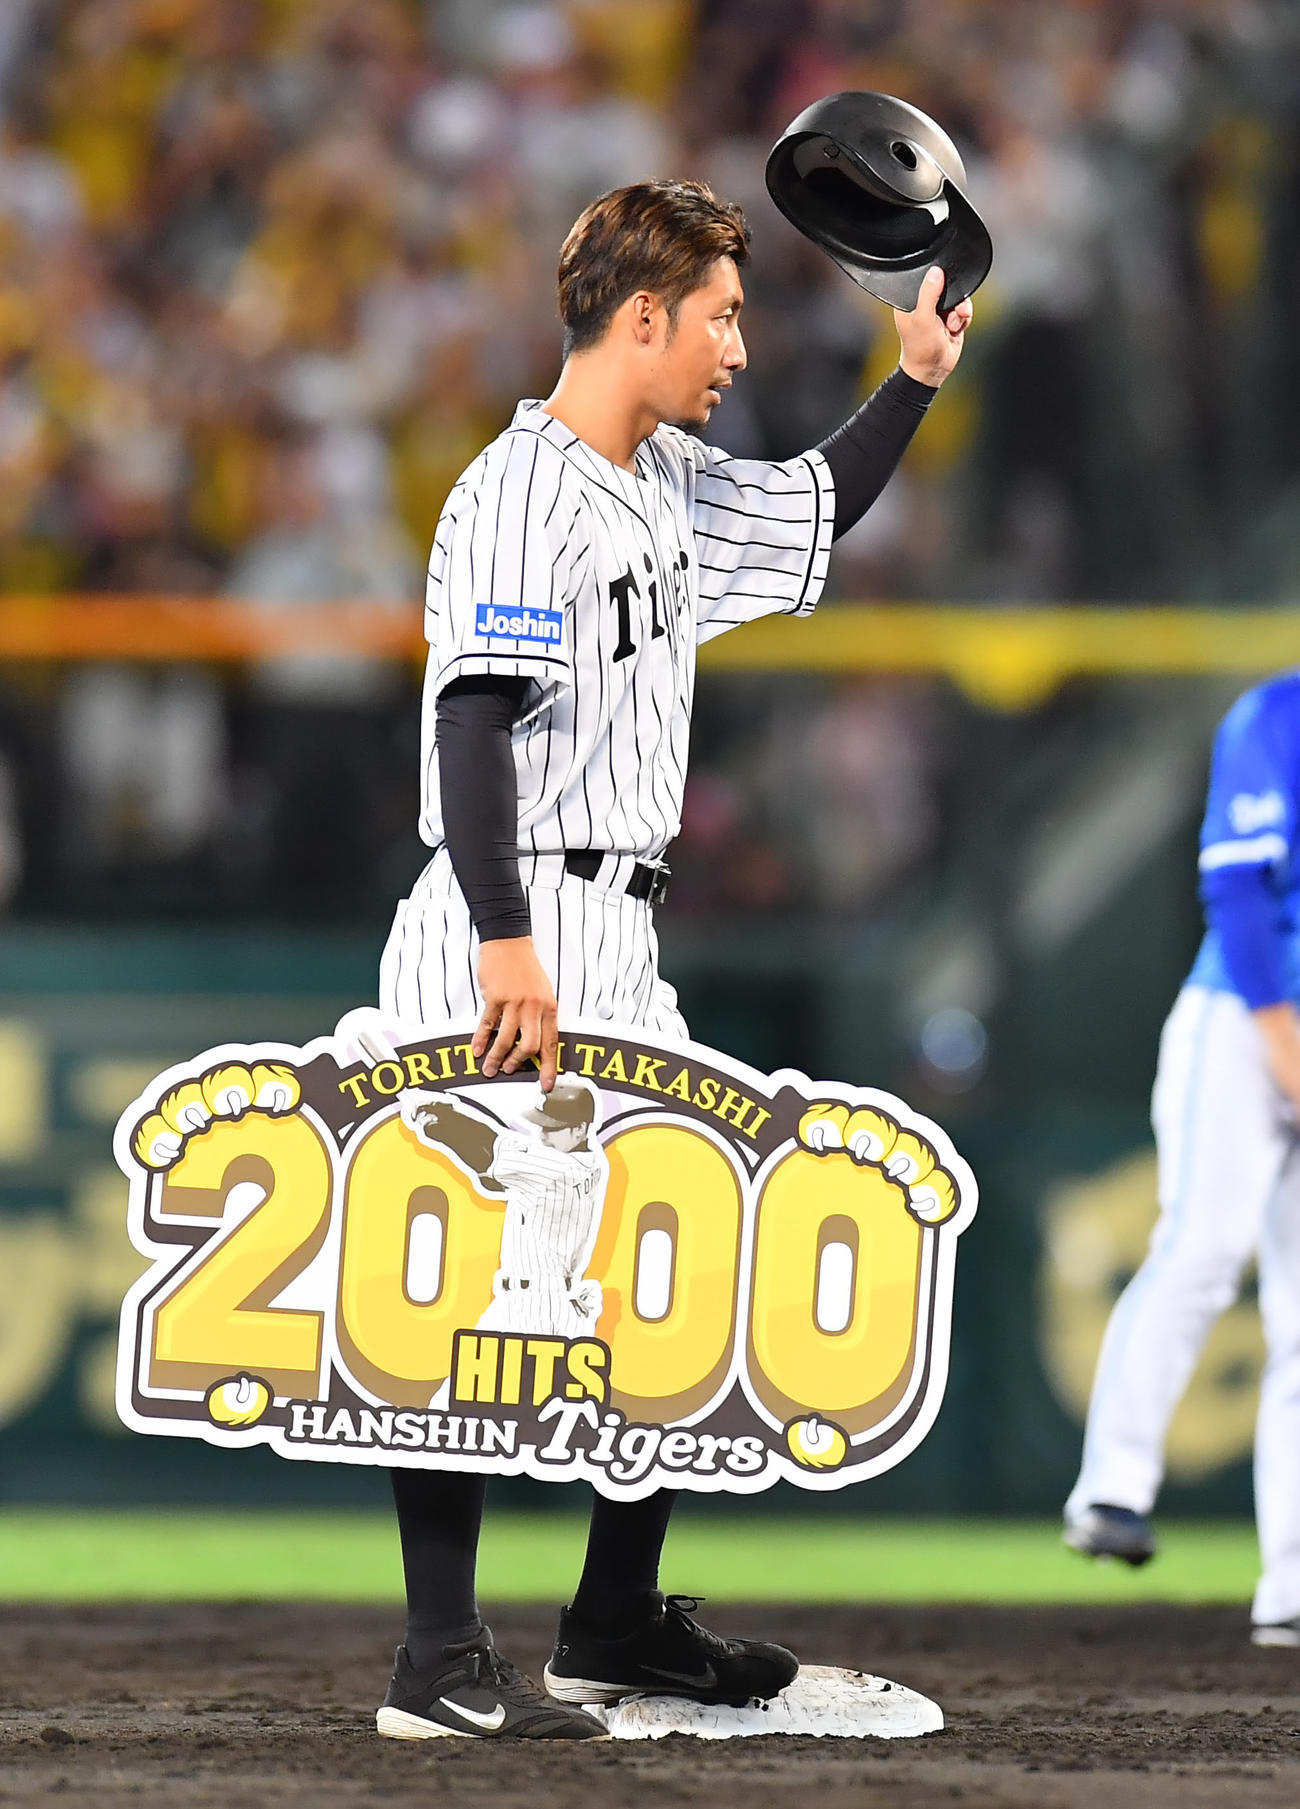 17年9月8日、2000安打となる二塁打を放った阪神鳥谷はボードを手にファンの歓声にヘルメットを上げて応える